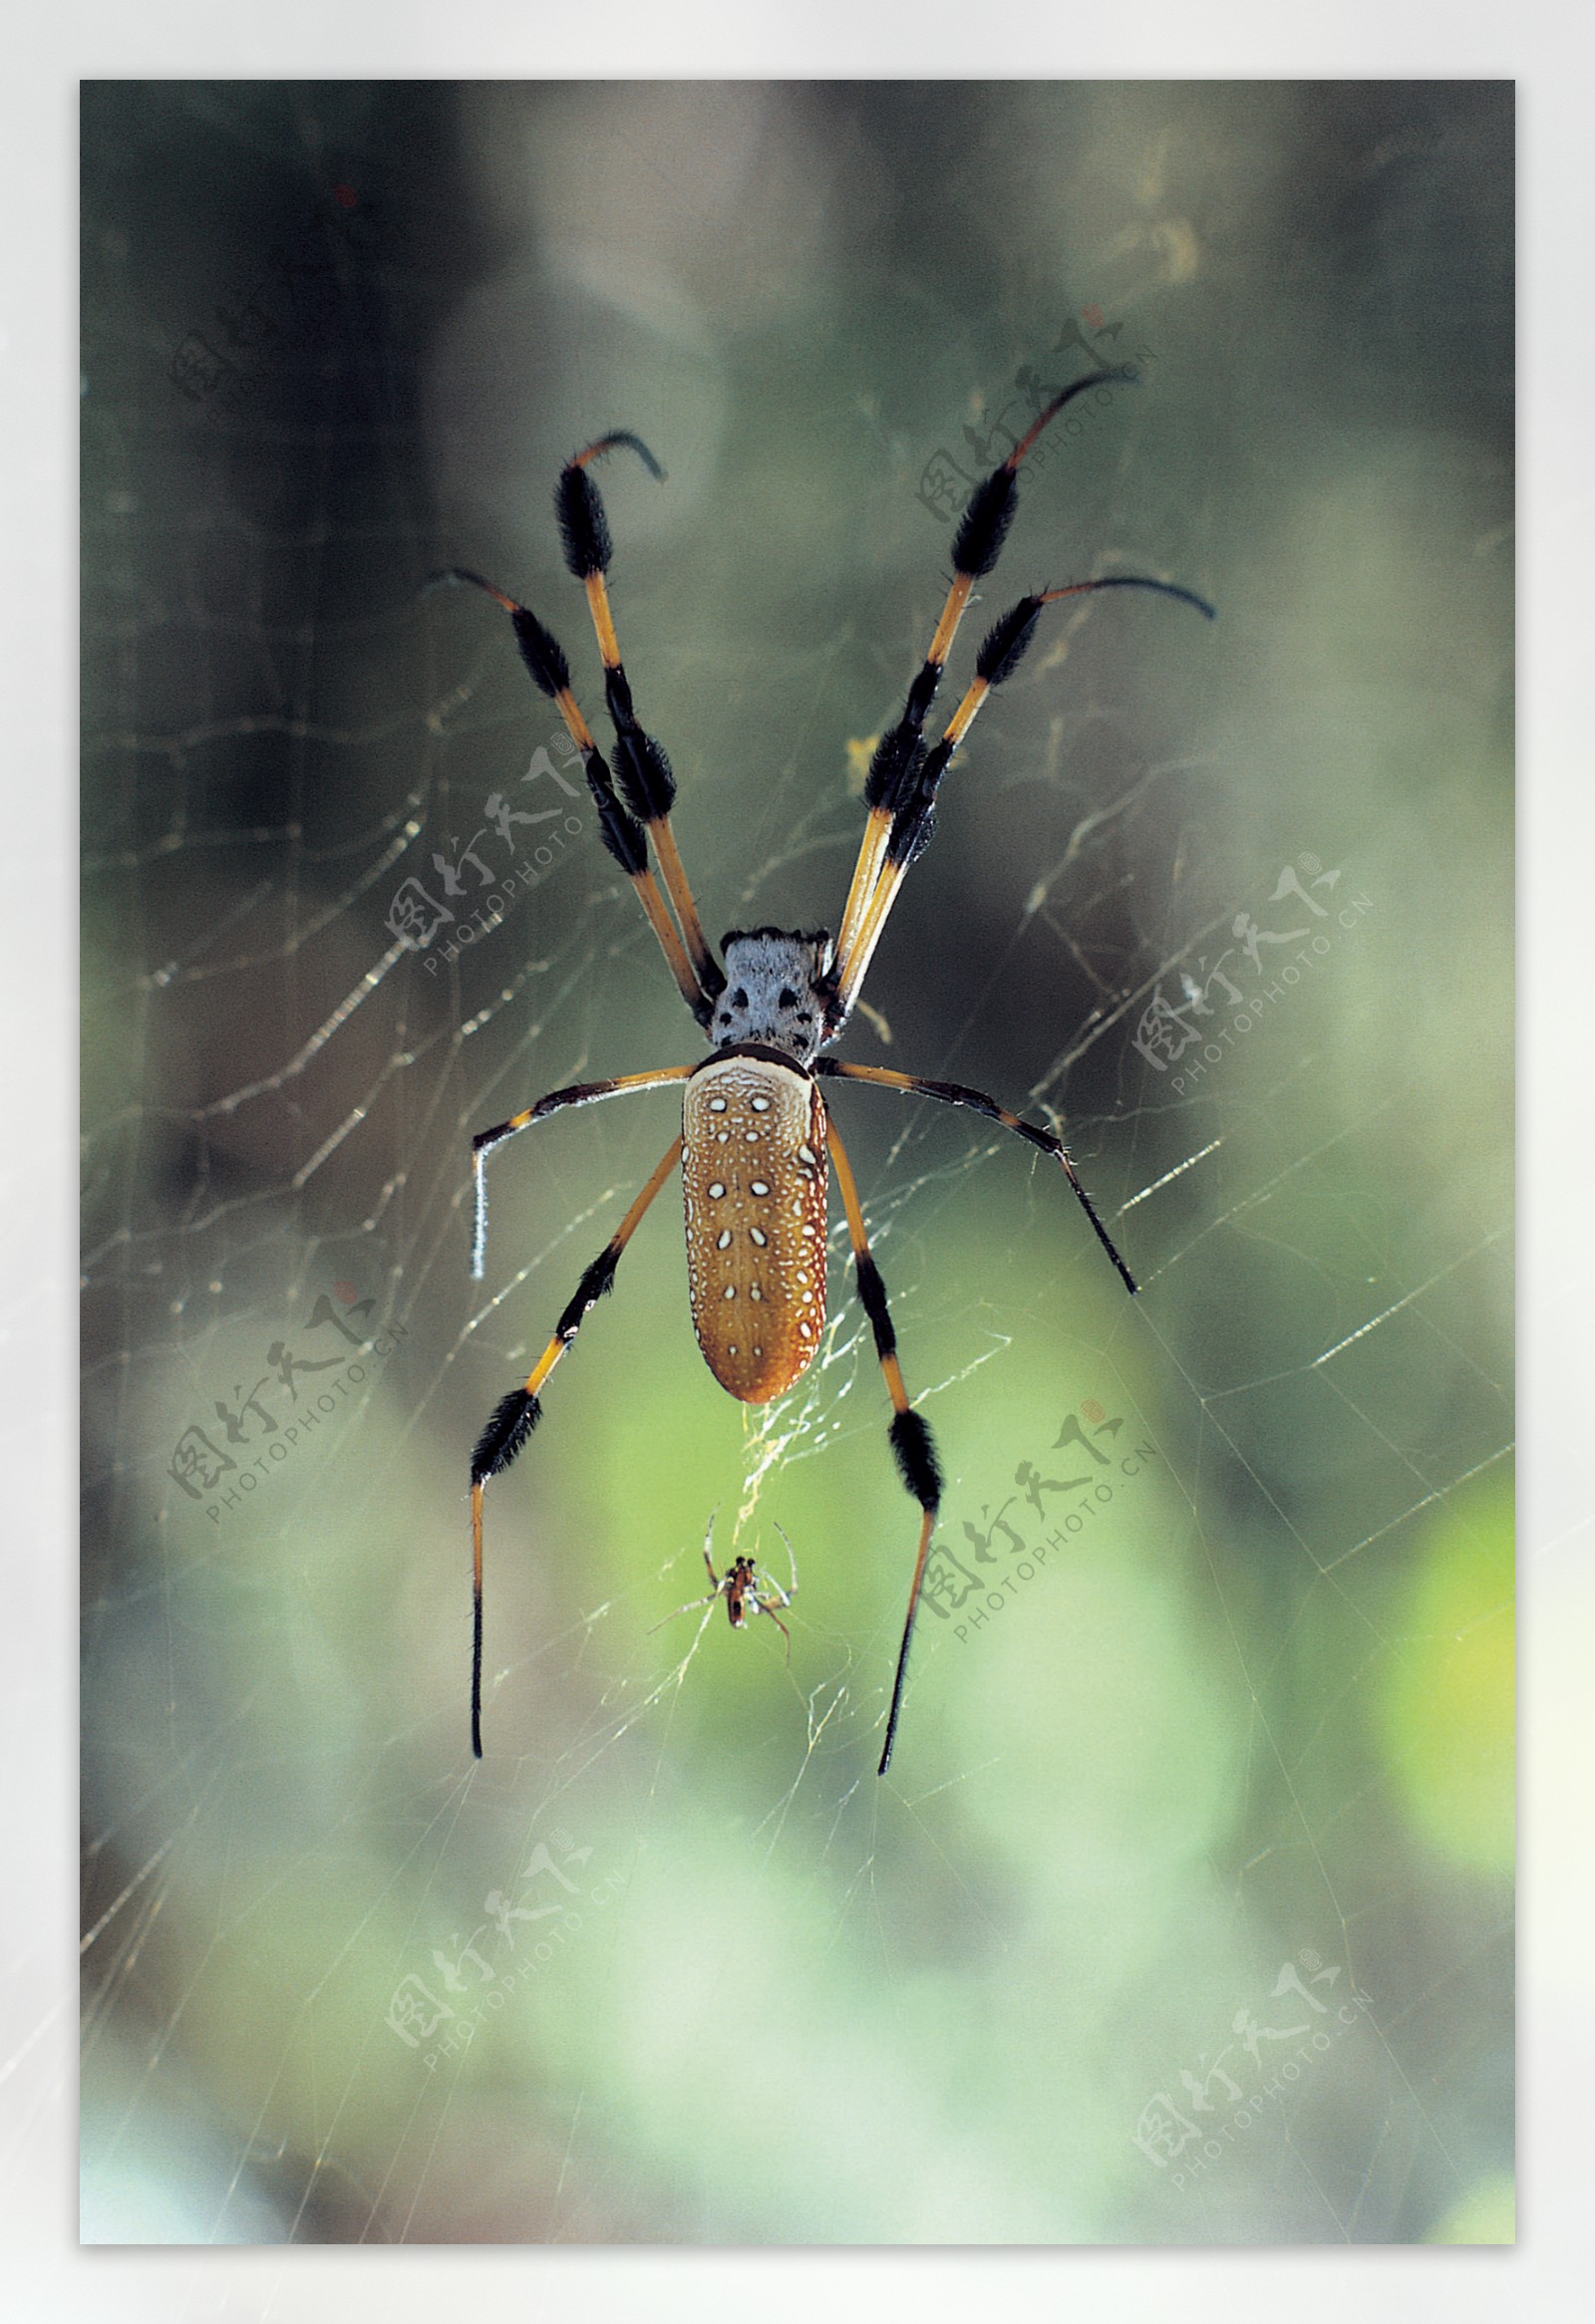 漂亮多彩的蜘蛛图 向量例证. 插画 包括有 例证, 万维网, 蜘蛛网, 样式, 五颜六色, 敌意, 蜘蛛 - 195830178